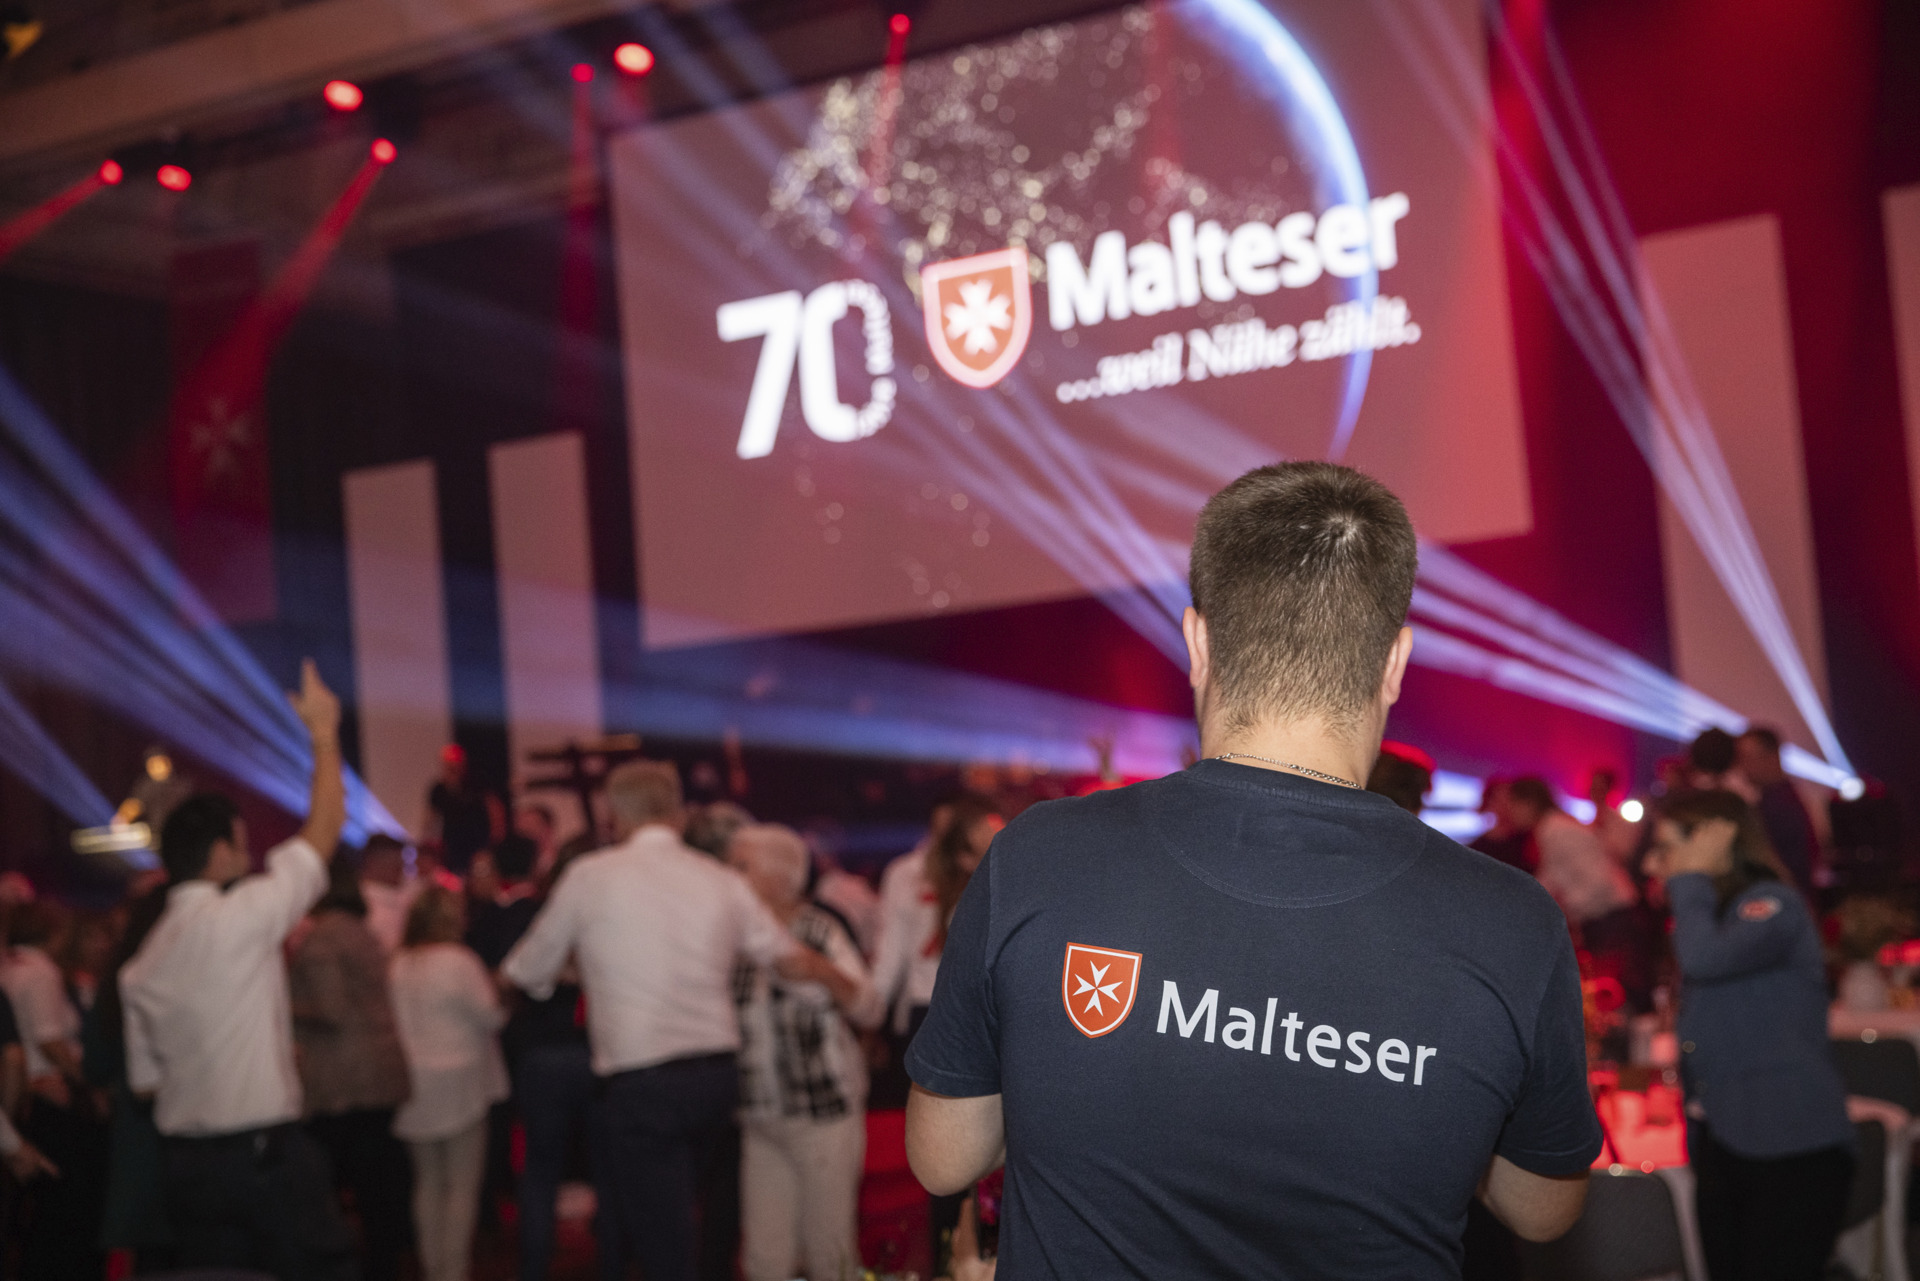 Le corps de secours de l’Ordre de Malte en Allemagne fête ses 70 ans